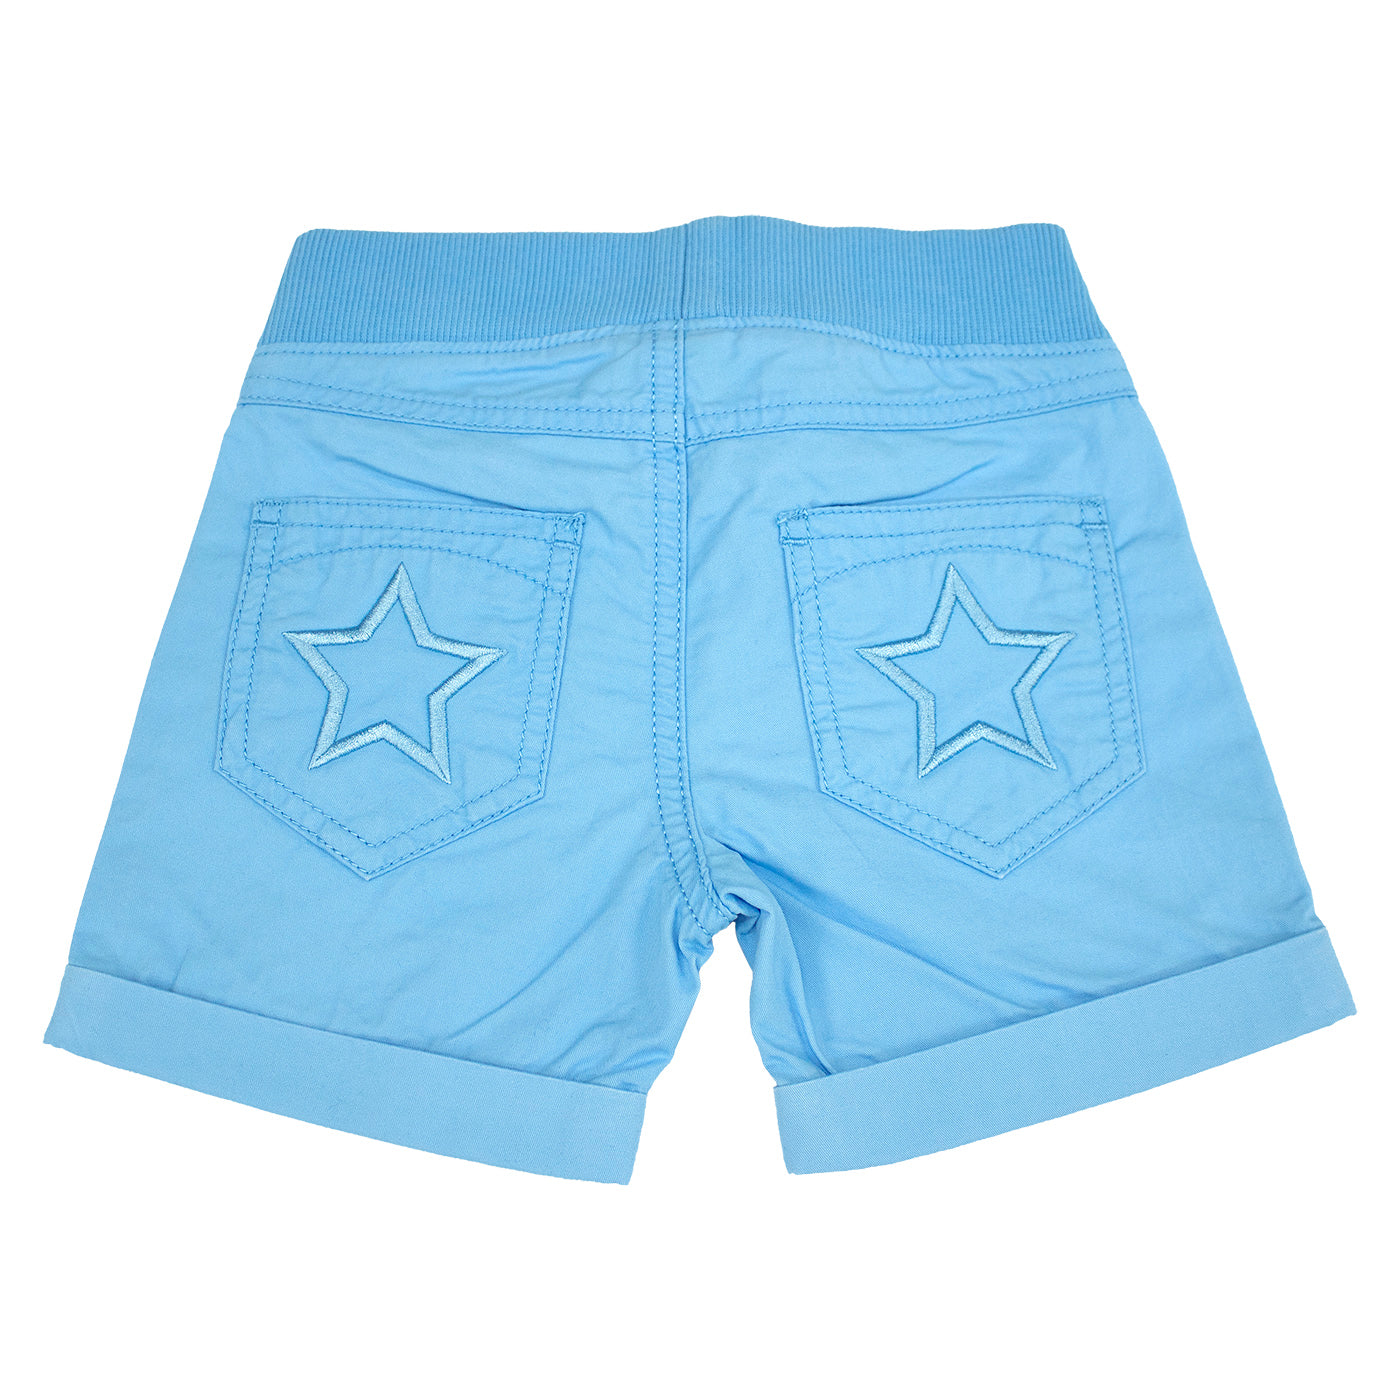 Villervalla Star Shorts Canvas - Aqua